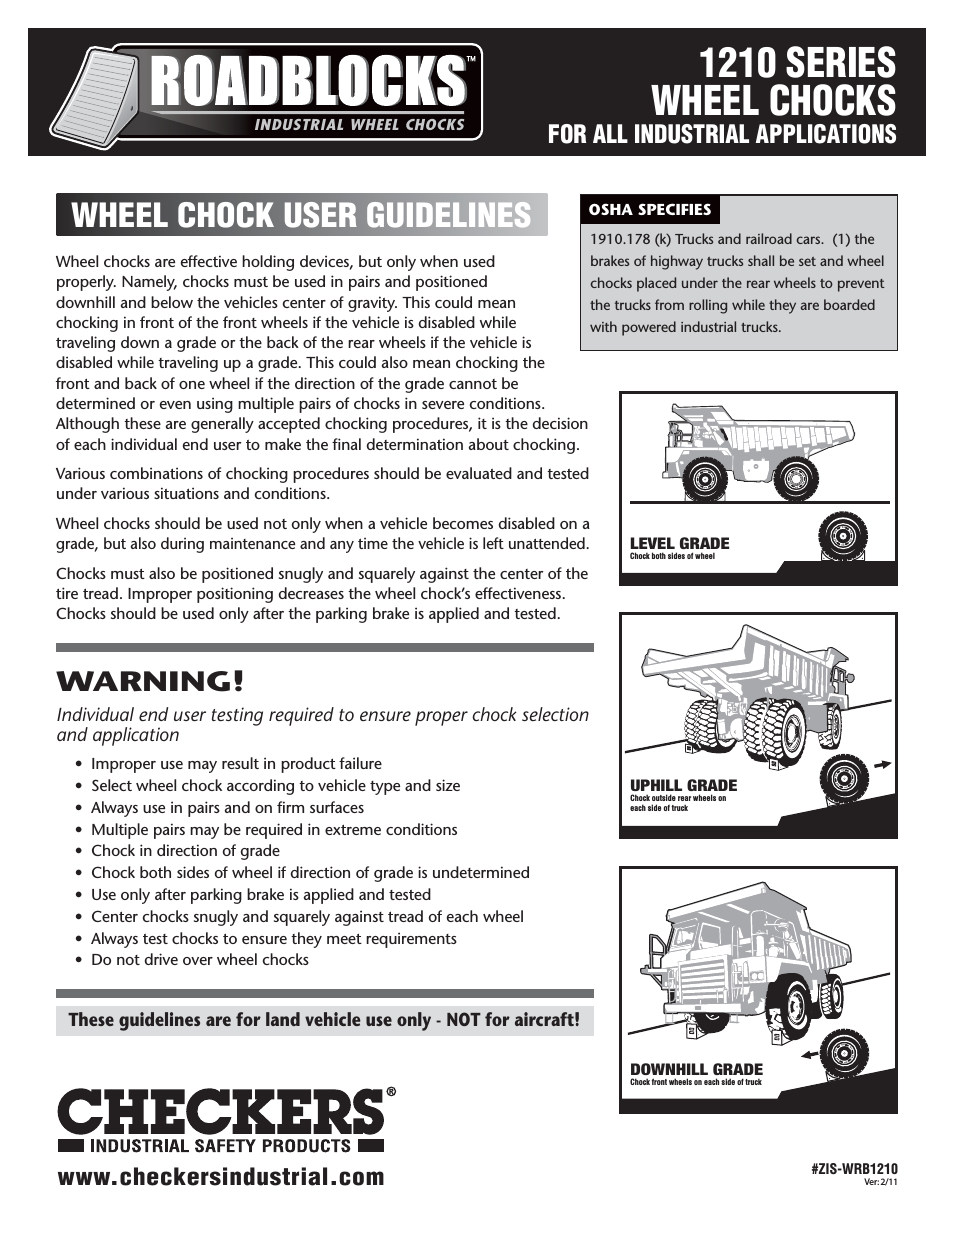 Roadblocks 1200 Wheel Chocks User Guidelines